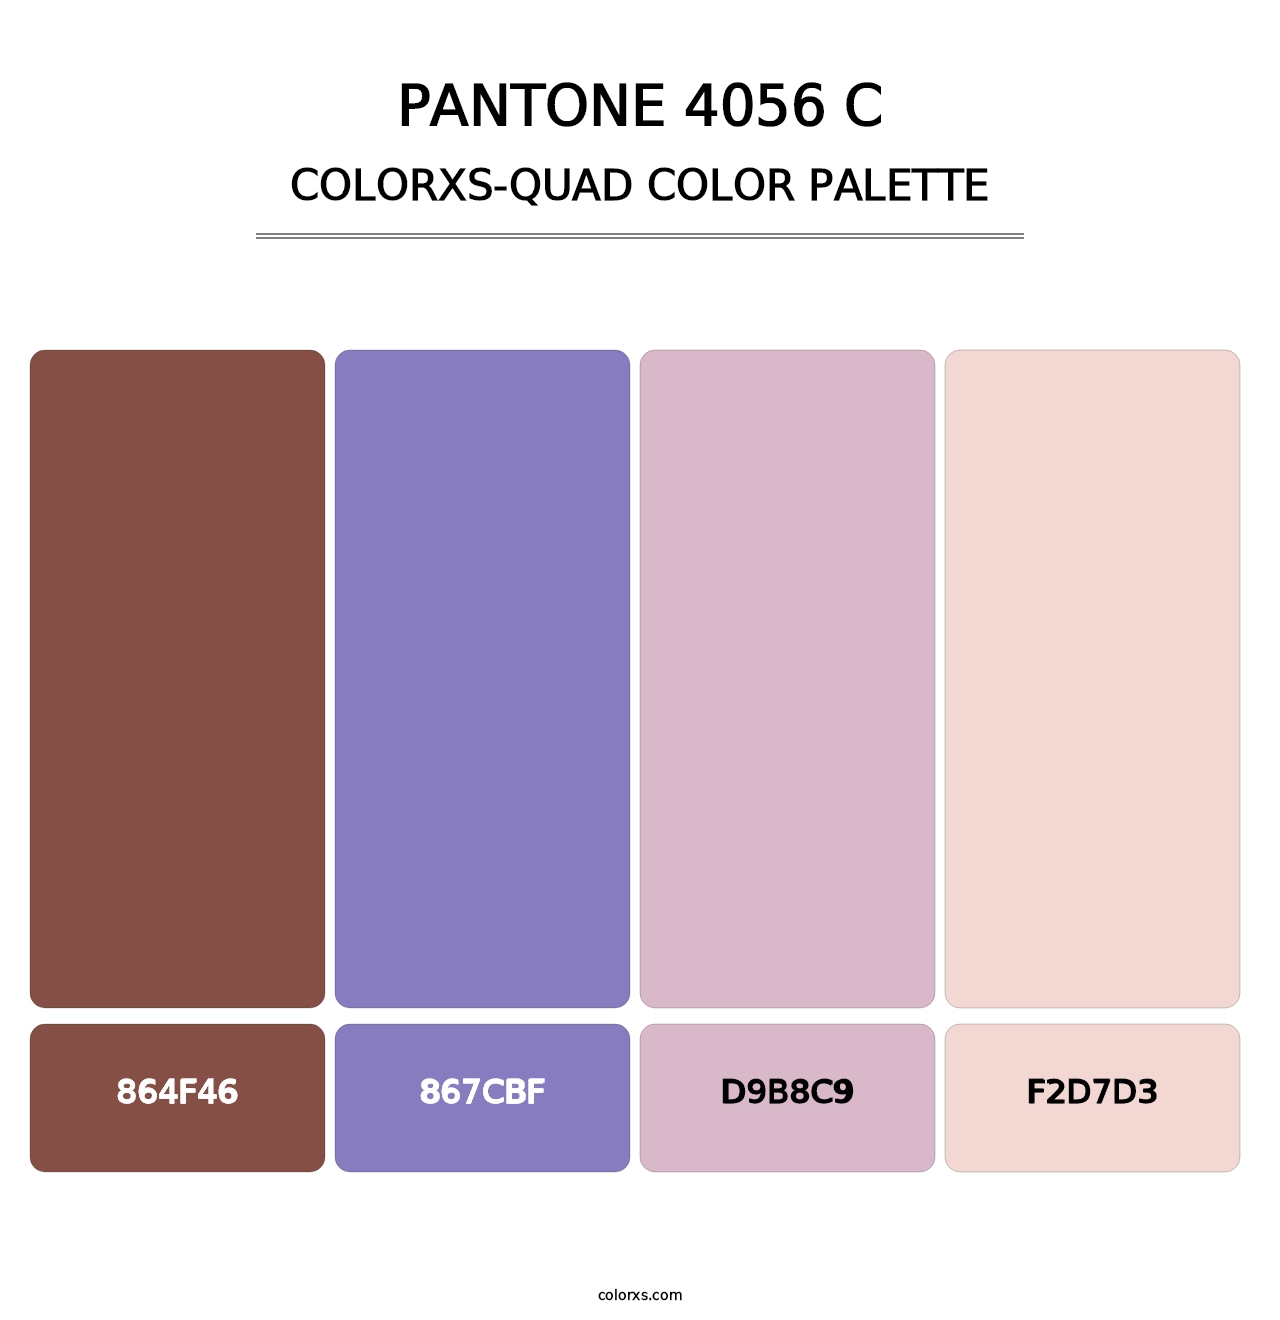 PANTONE 4056 C - Colorxs Quad Palette